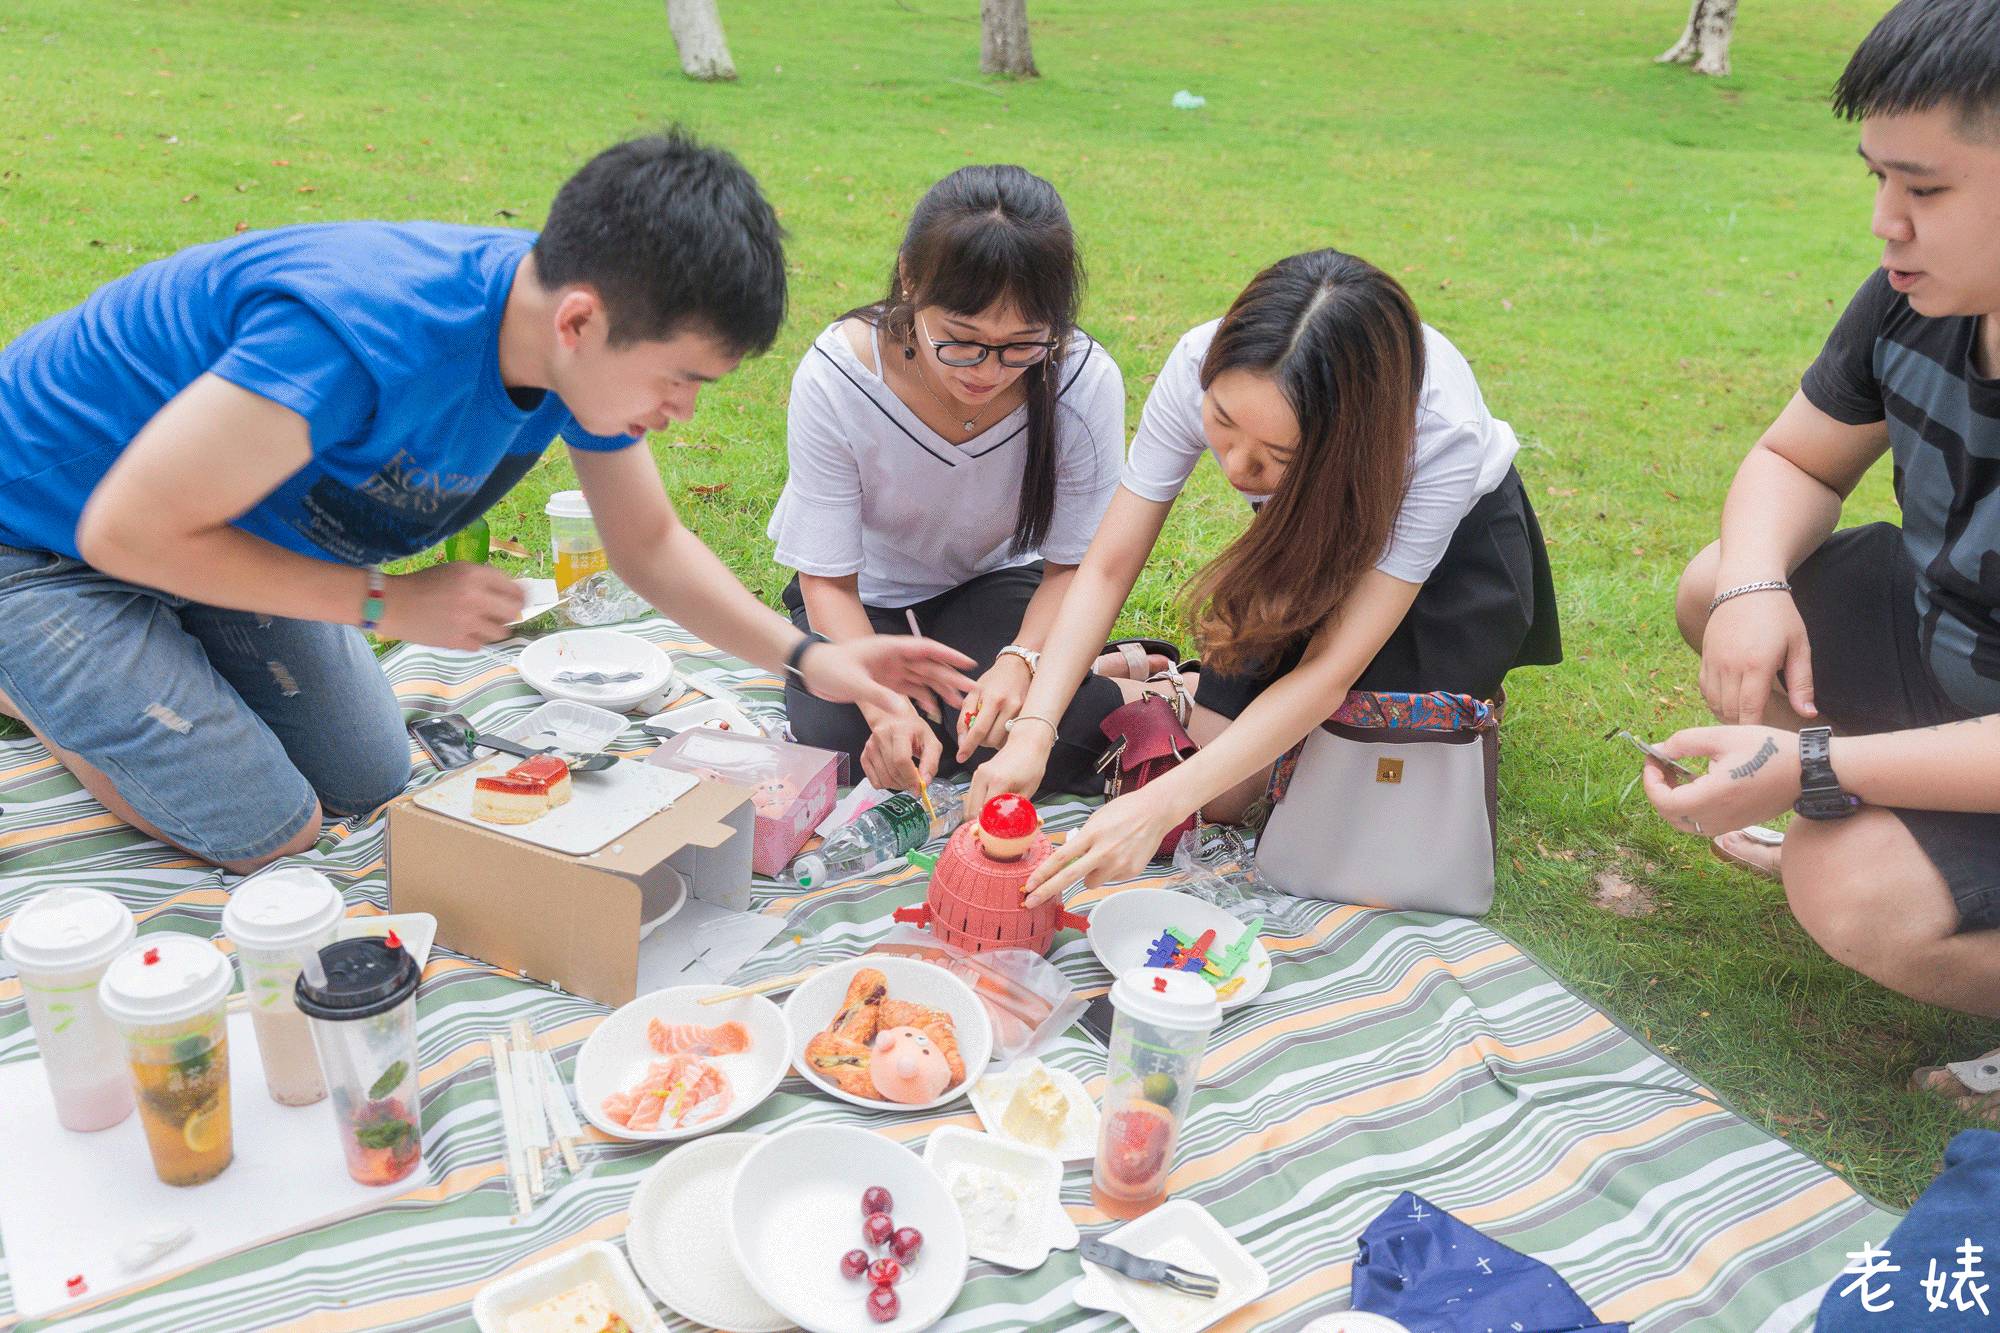 我们举办了一个全广州最好看的野餐,如果你没来,可以看看照片解解馋.